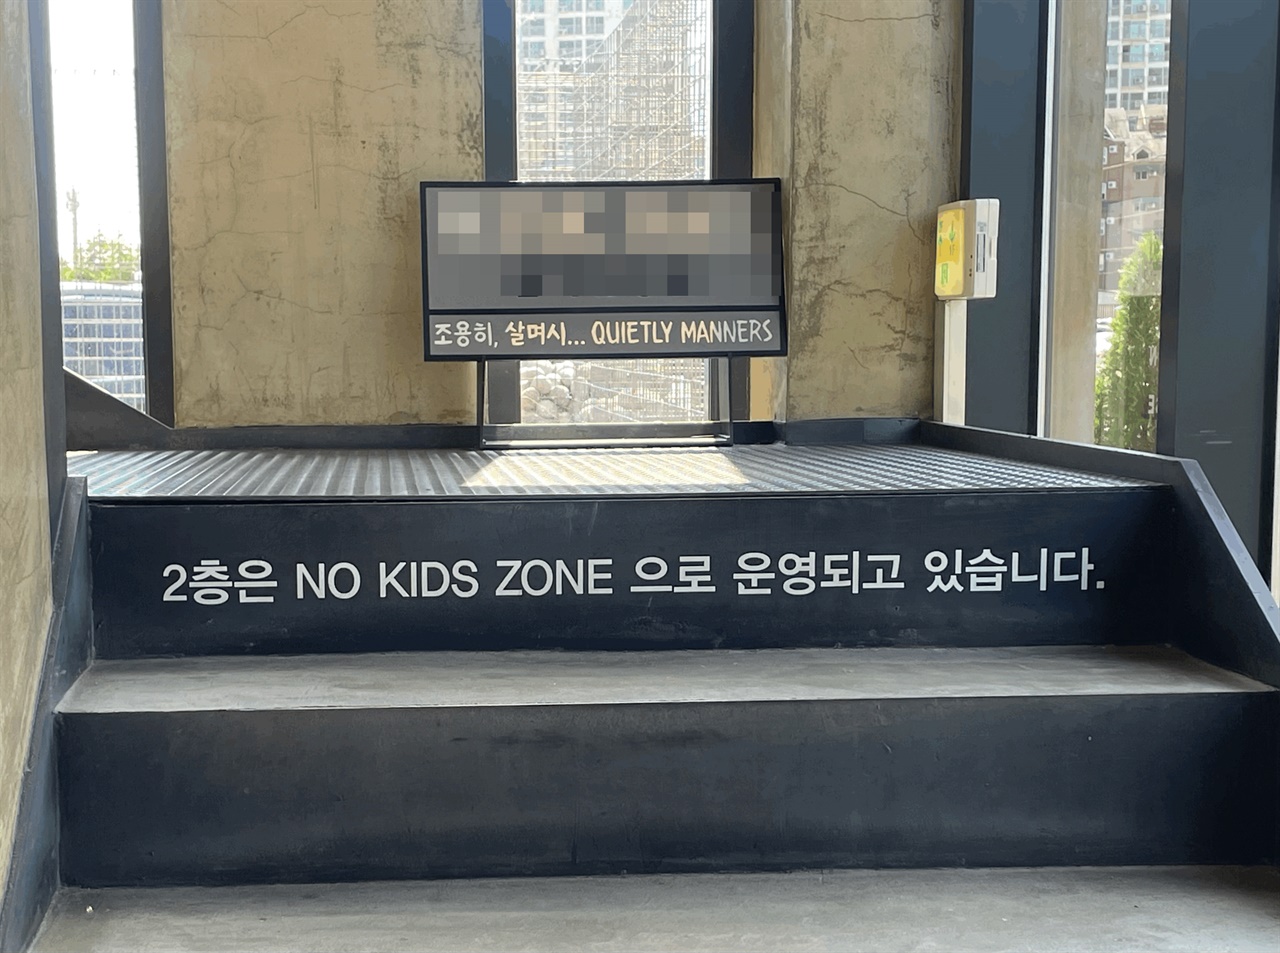 ▲춘천의 한 카페에 '2층은 NO KIDS ZONE(노키즈존)으로 운영되고 있다'는 안내글이 적혀 있다.